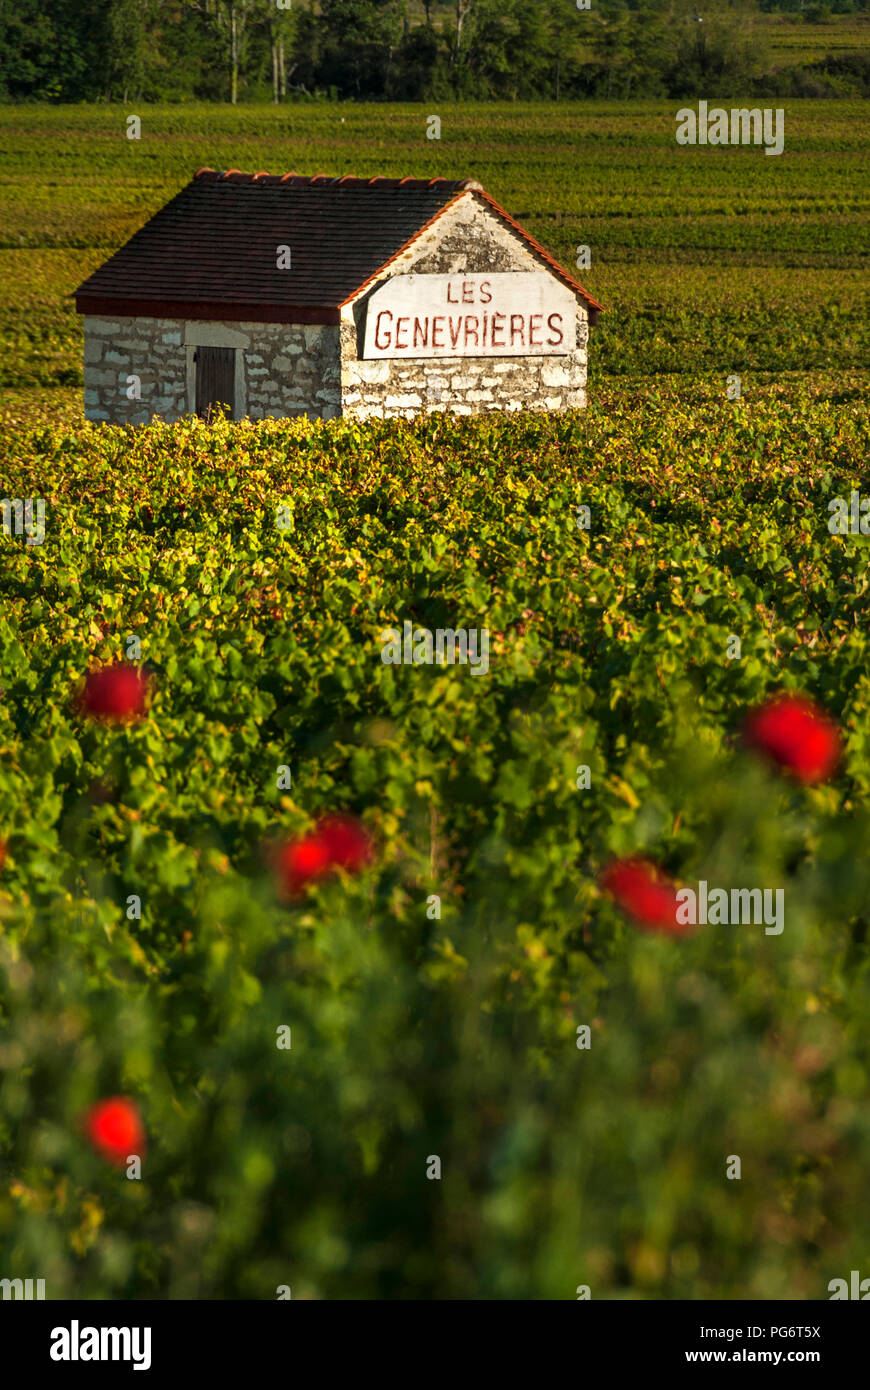 LES GENEVRIERES vendangeurs stone refuge dans les Genevrières vineyard coquelicots en premier plan. Meursault, Bourgogne Côte d'Or, France. Banque D'Images